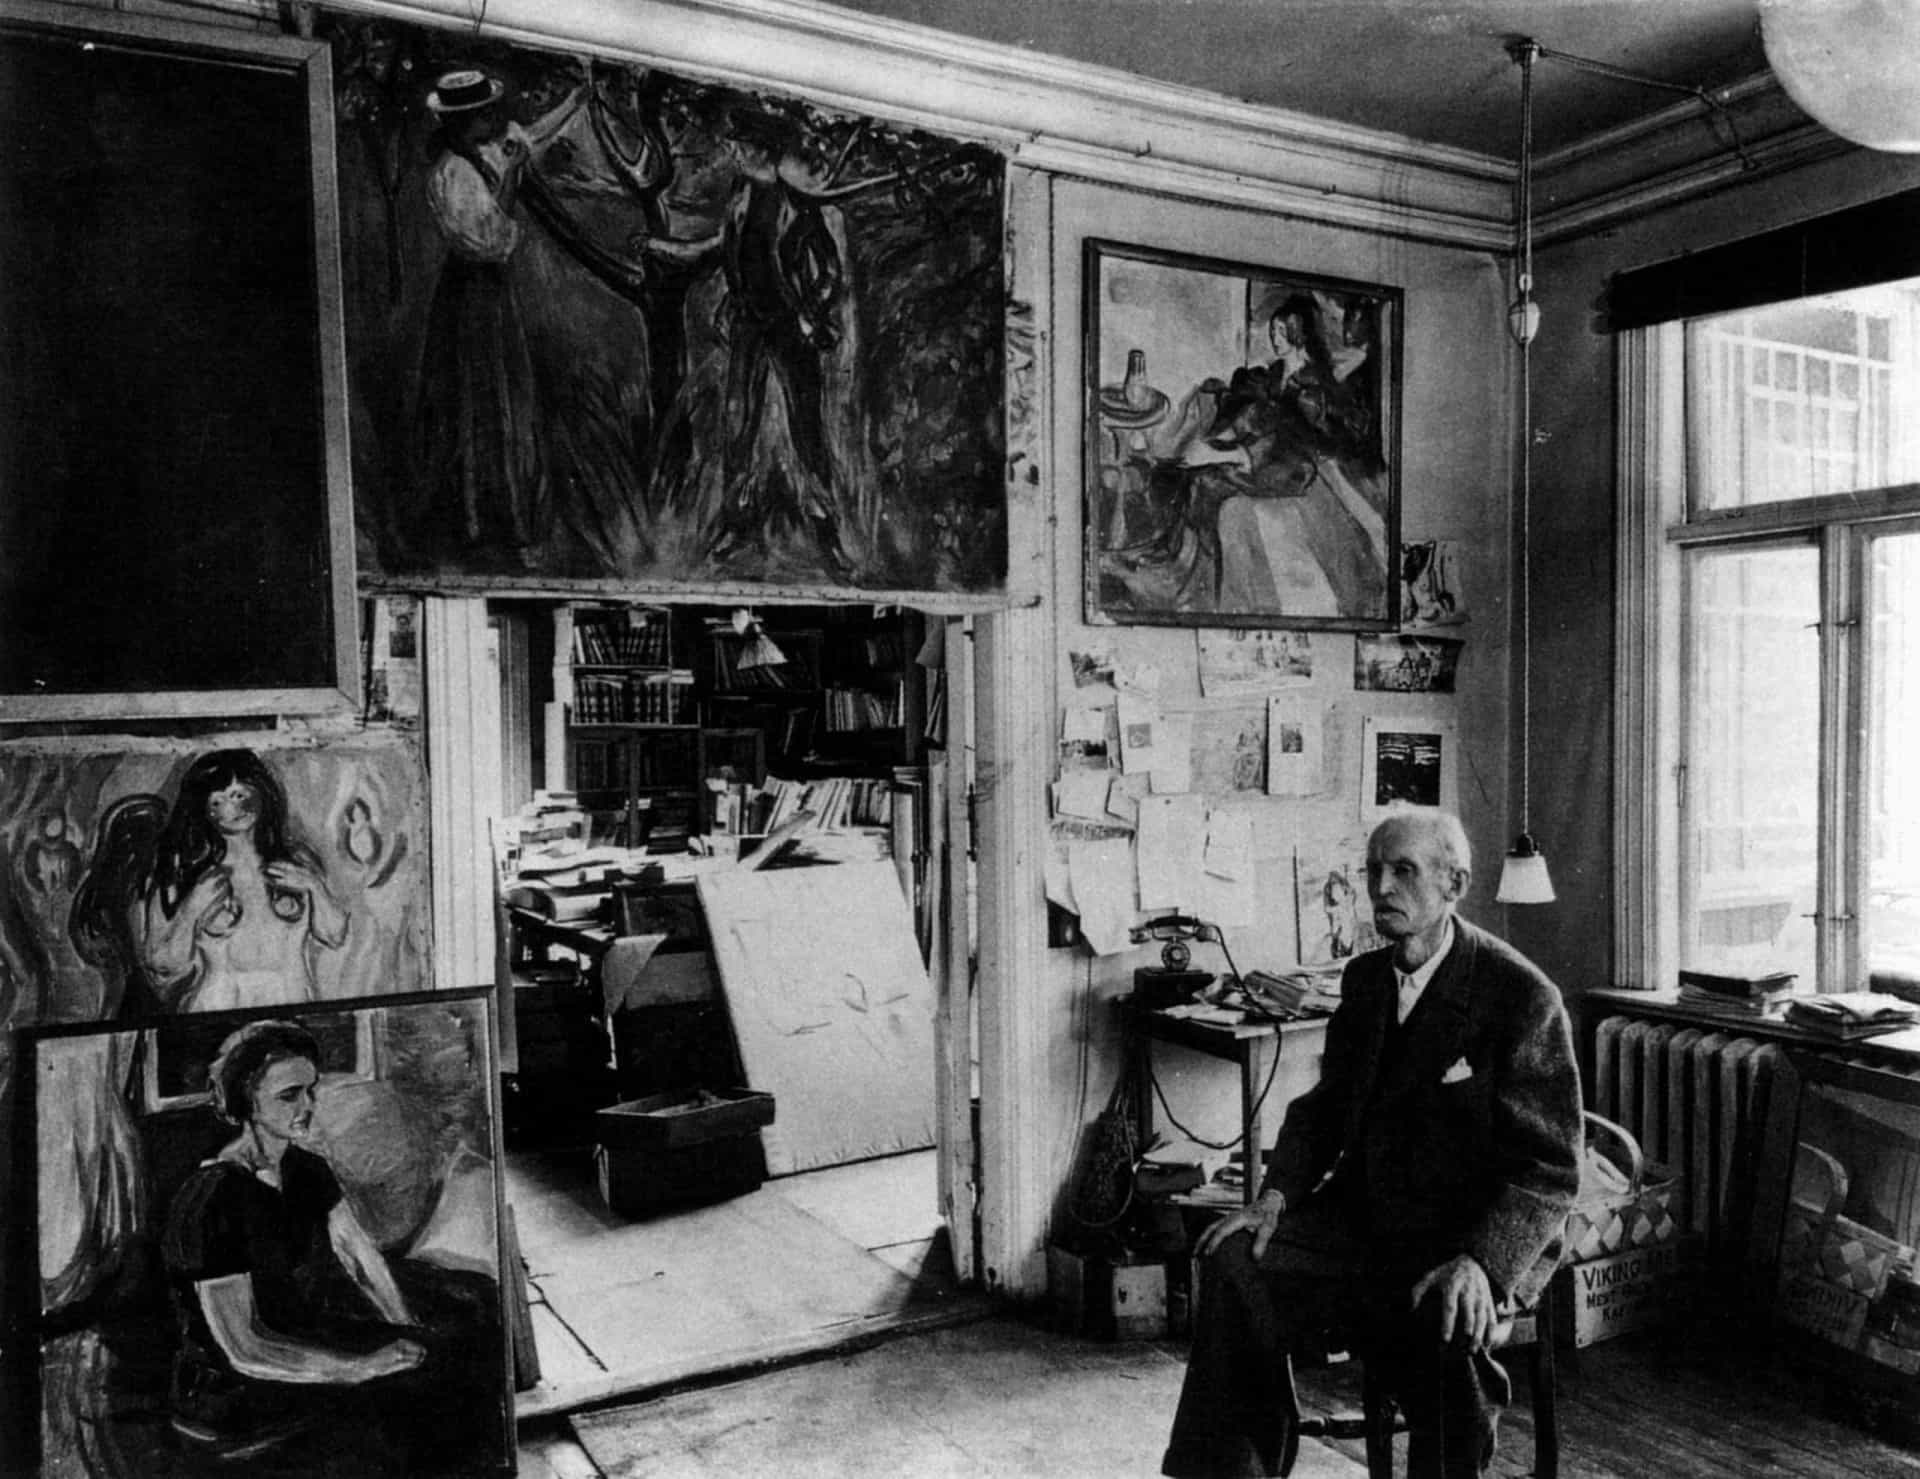 <p>El artista noruego Edvard Munch, creador de la famosa pintura "El grito", tenía talento para capturar el sufrimiento en su obra. Cuando contrajo la gripe española en 1919, pintó un autorretrato durante su enfermedad.</p>